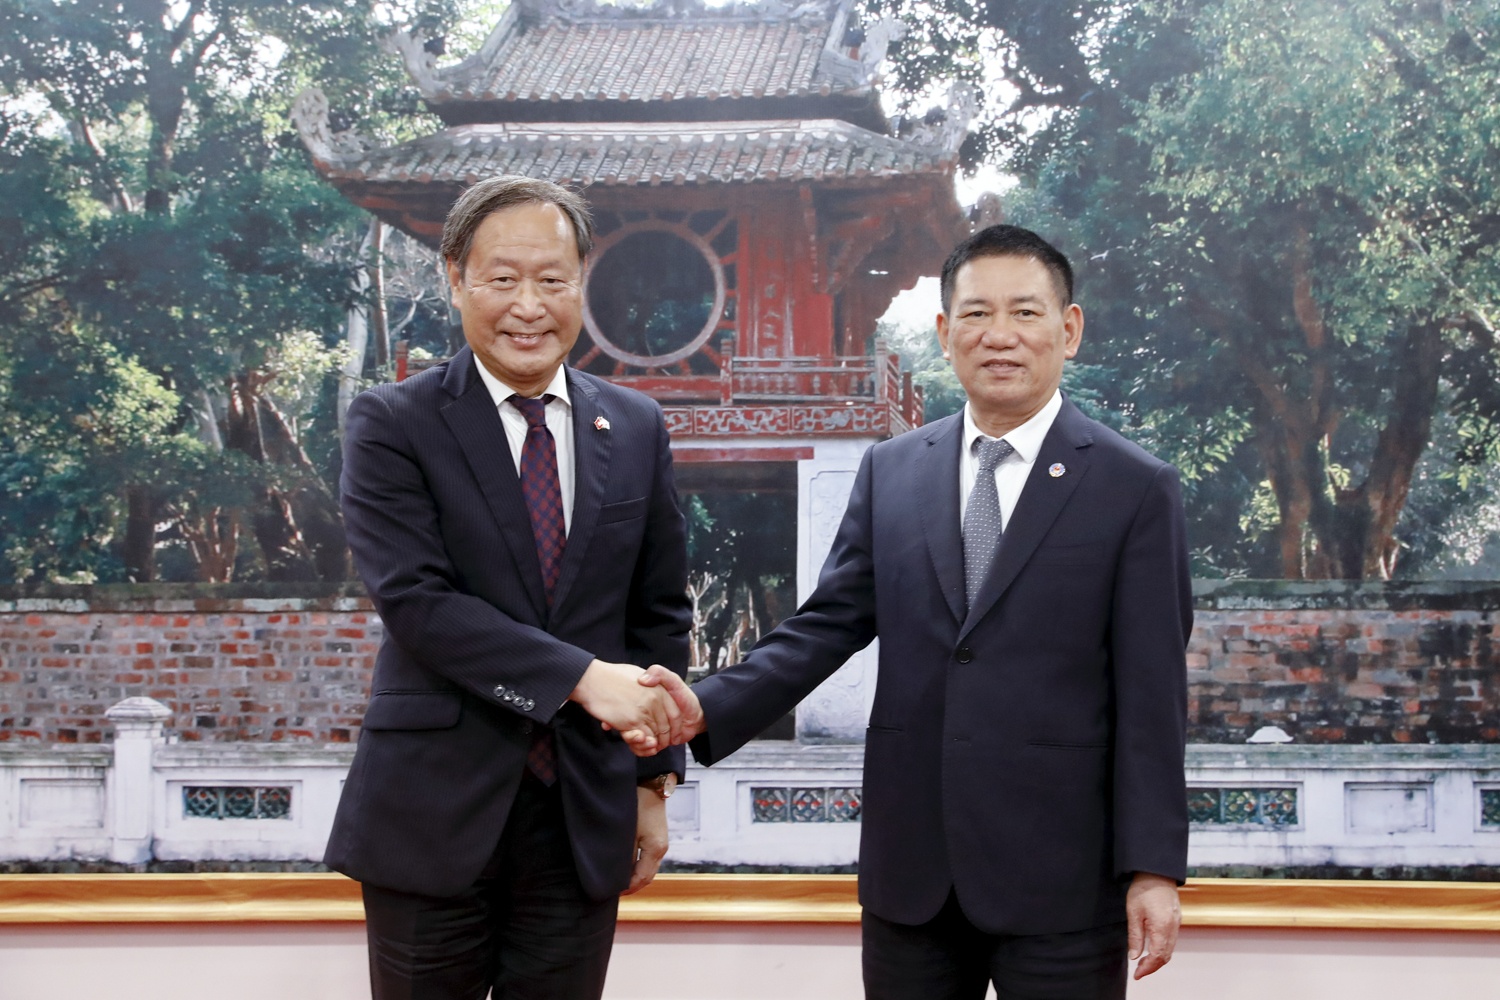 Phó Chủ tịch JICA thăm Việt Nam, thúc đẩy các dự án hợp tác